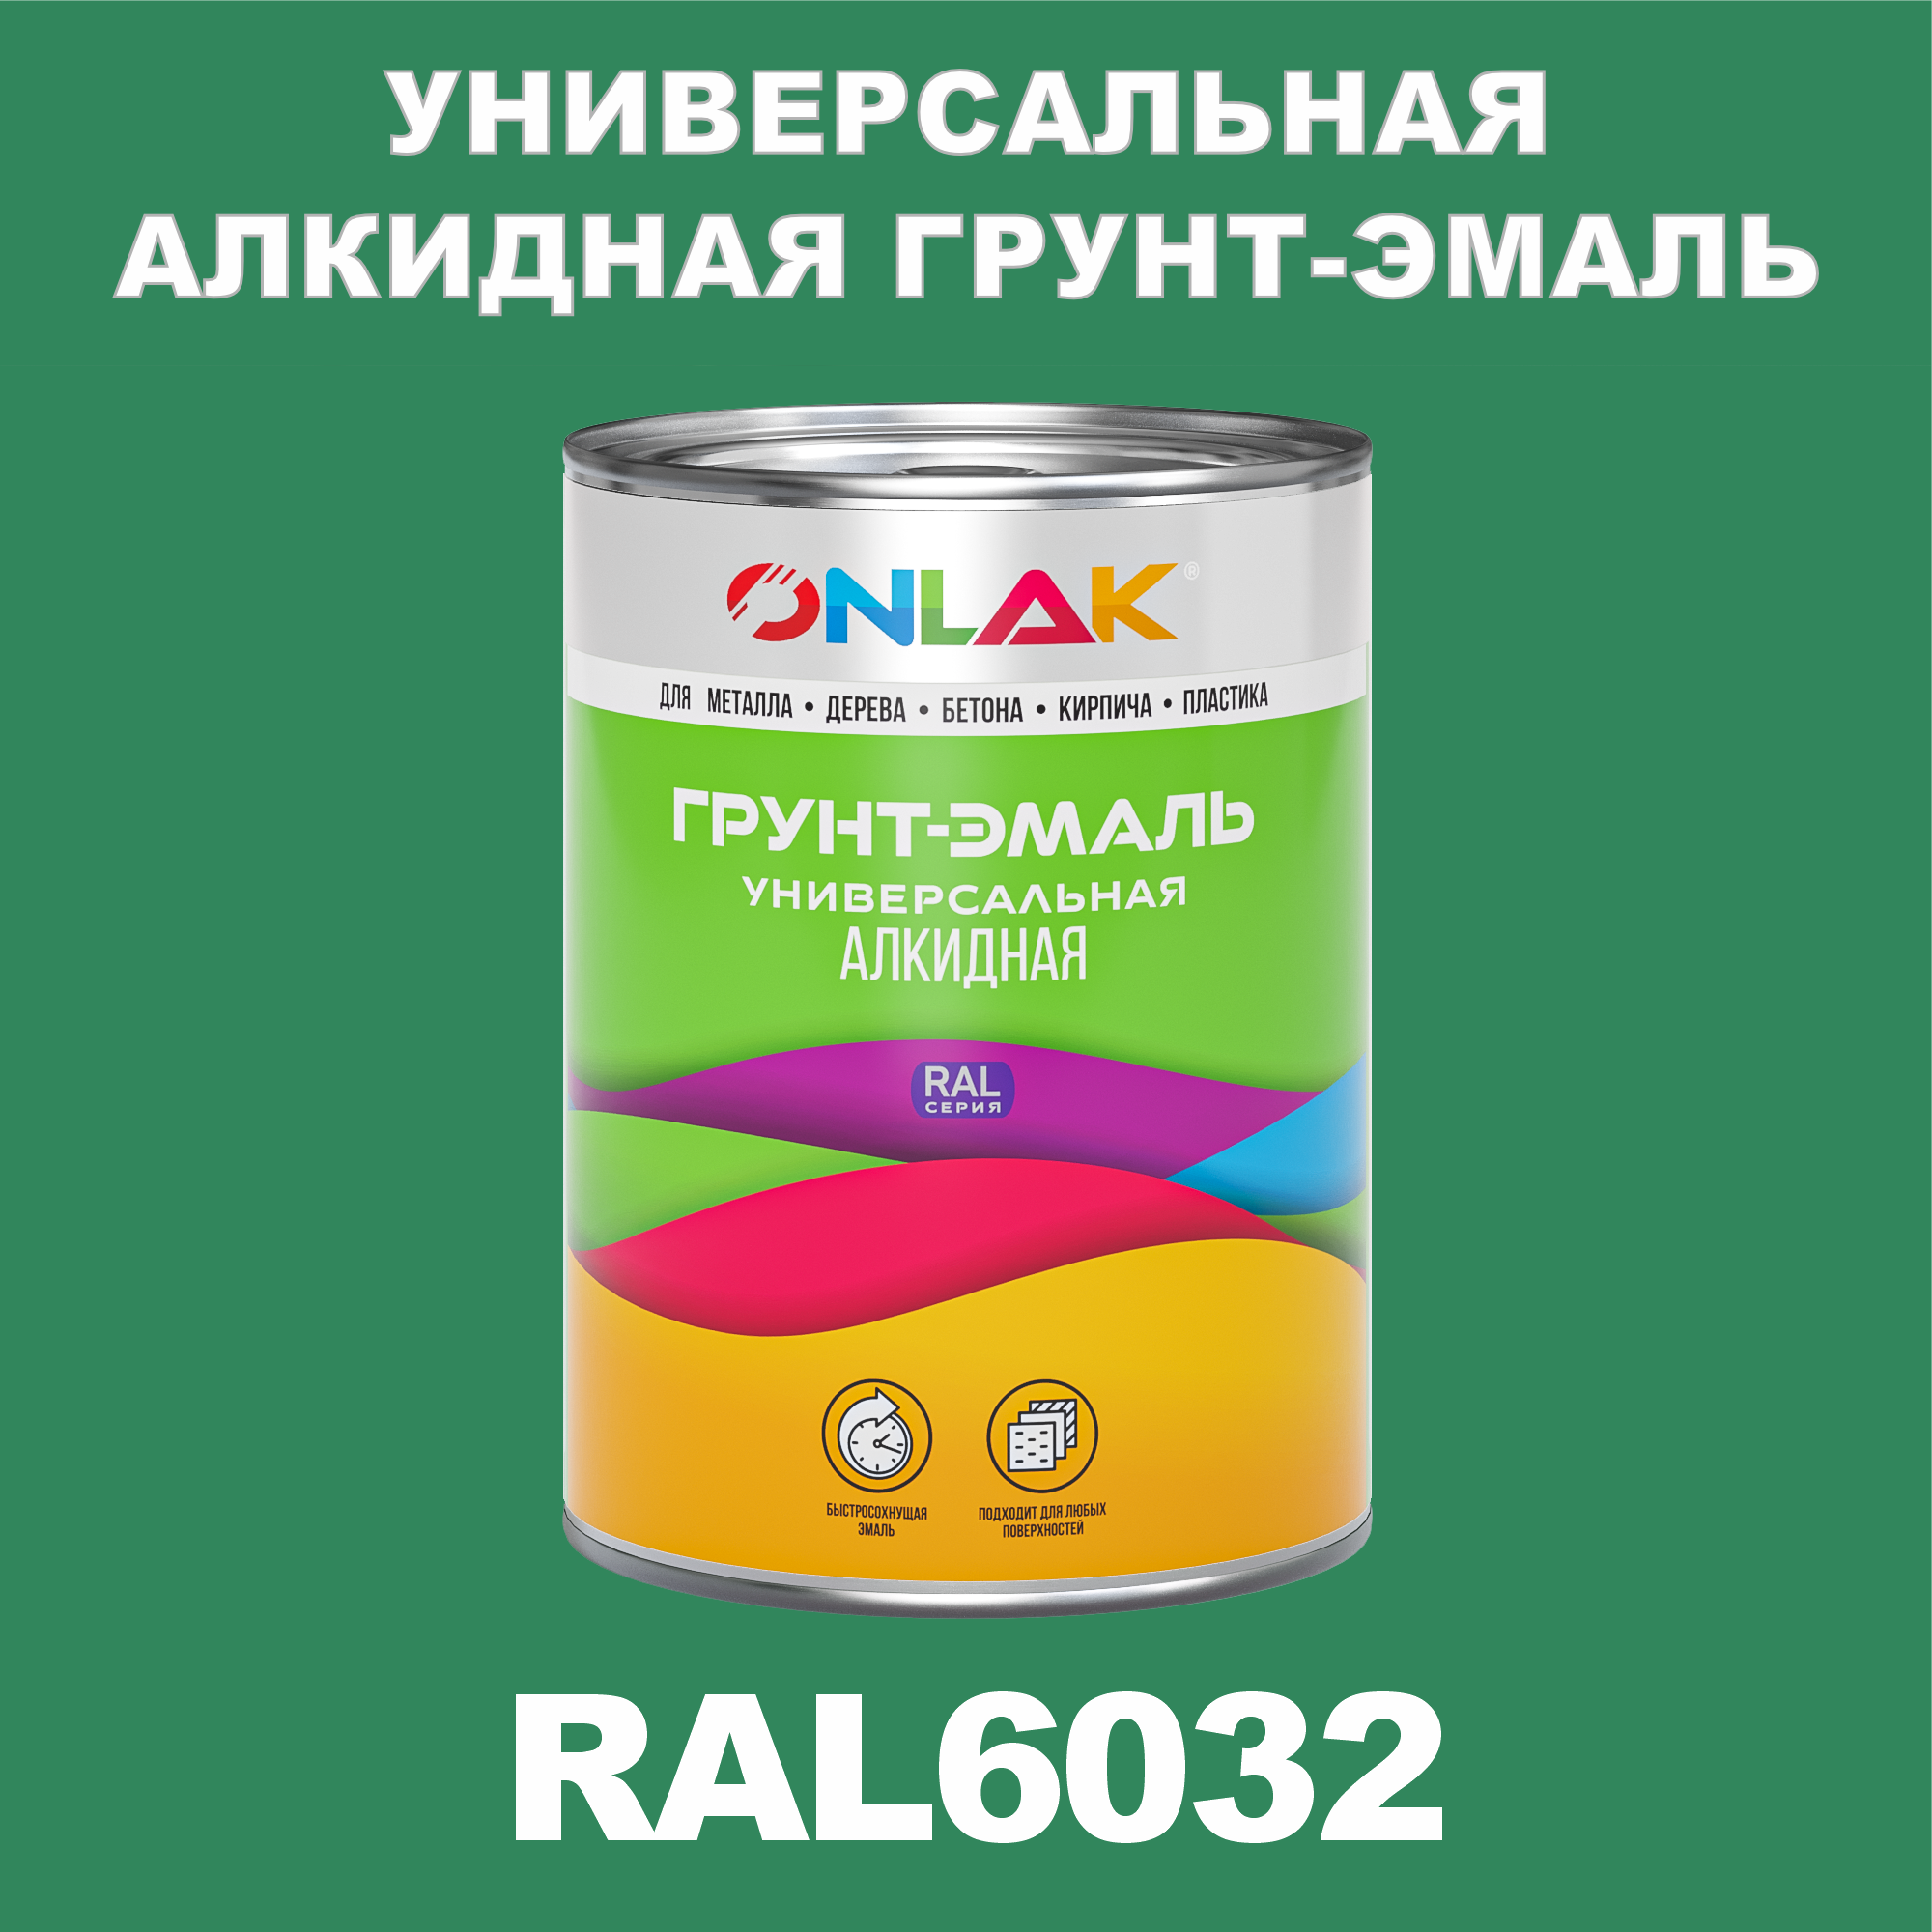 Грунт-эмаль ONLAK 1К RAL6032 антикоррозионная алкидная по металлу по ржавчине 1 кг грунт эмаль neomid по ржавчине быстросохнущая алкидная серая 0 9 кг